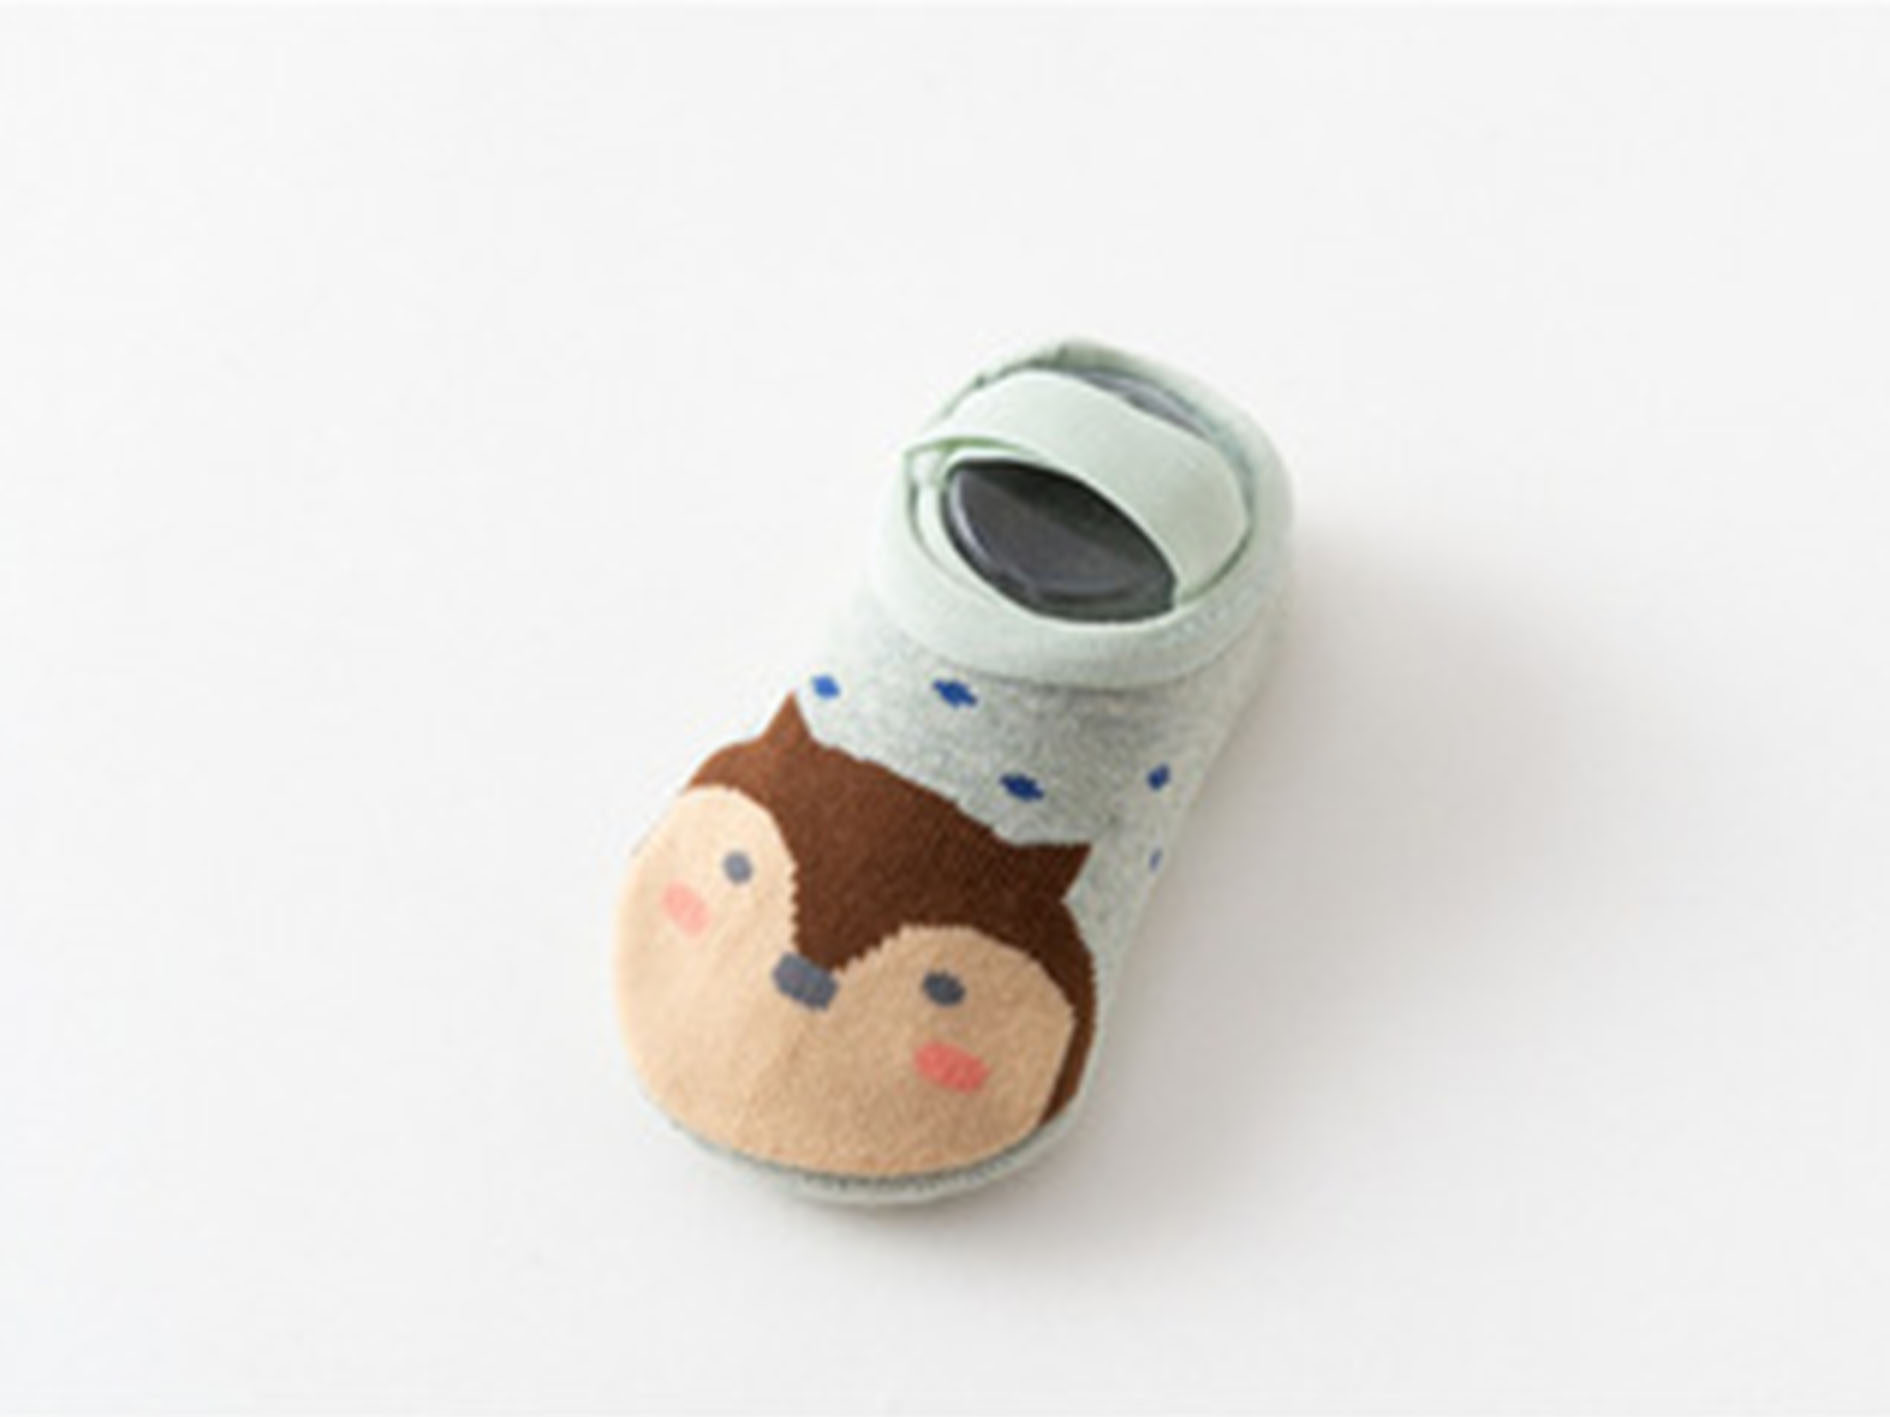 ถุงเท้าเด็กหัดเดิน ถุงเท้าเด็กอ่อน ถุงเท้าเด็กแรกเกิด ถุงเท้าเด็กทารก ลายการ์ตูนน่ารัก มีกันลื่น สำหรับเด็กอายุ 0-12 เดือน